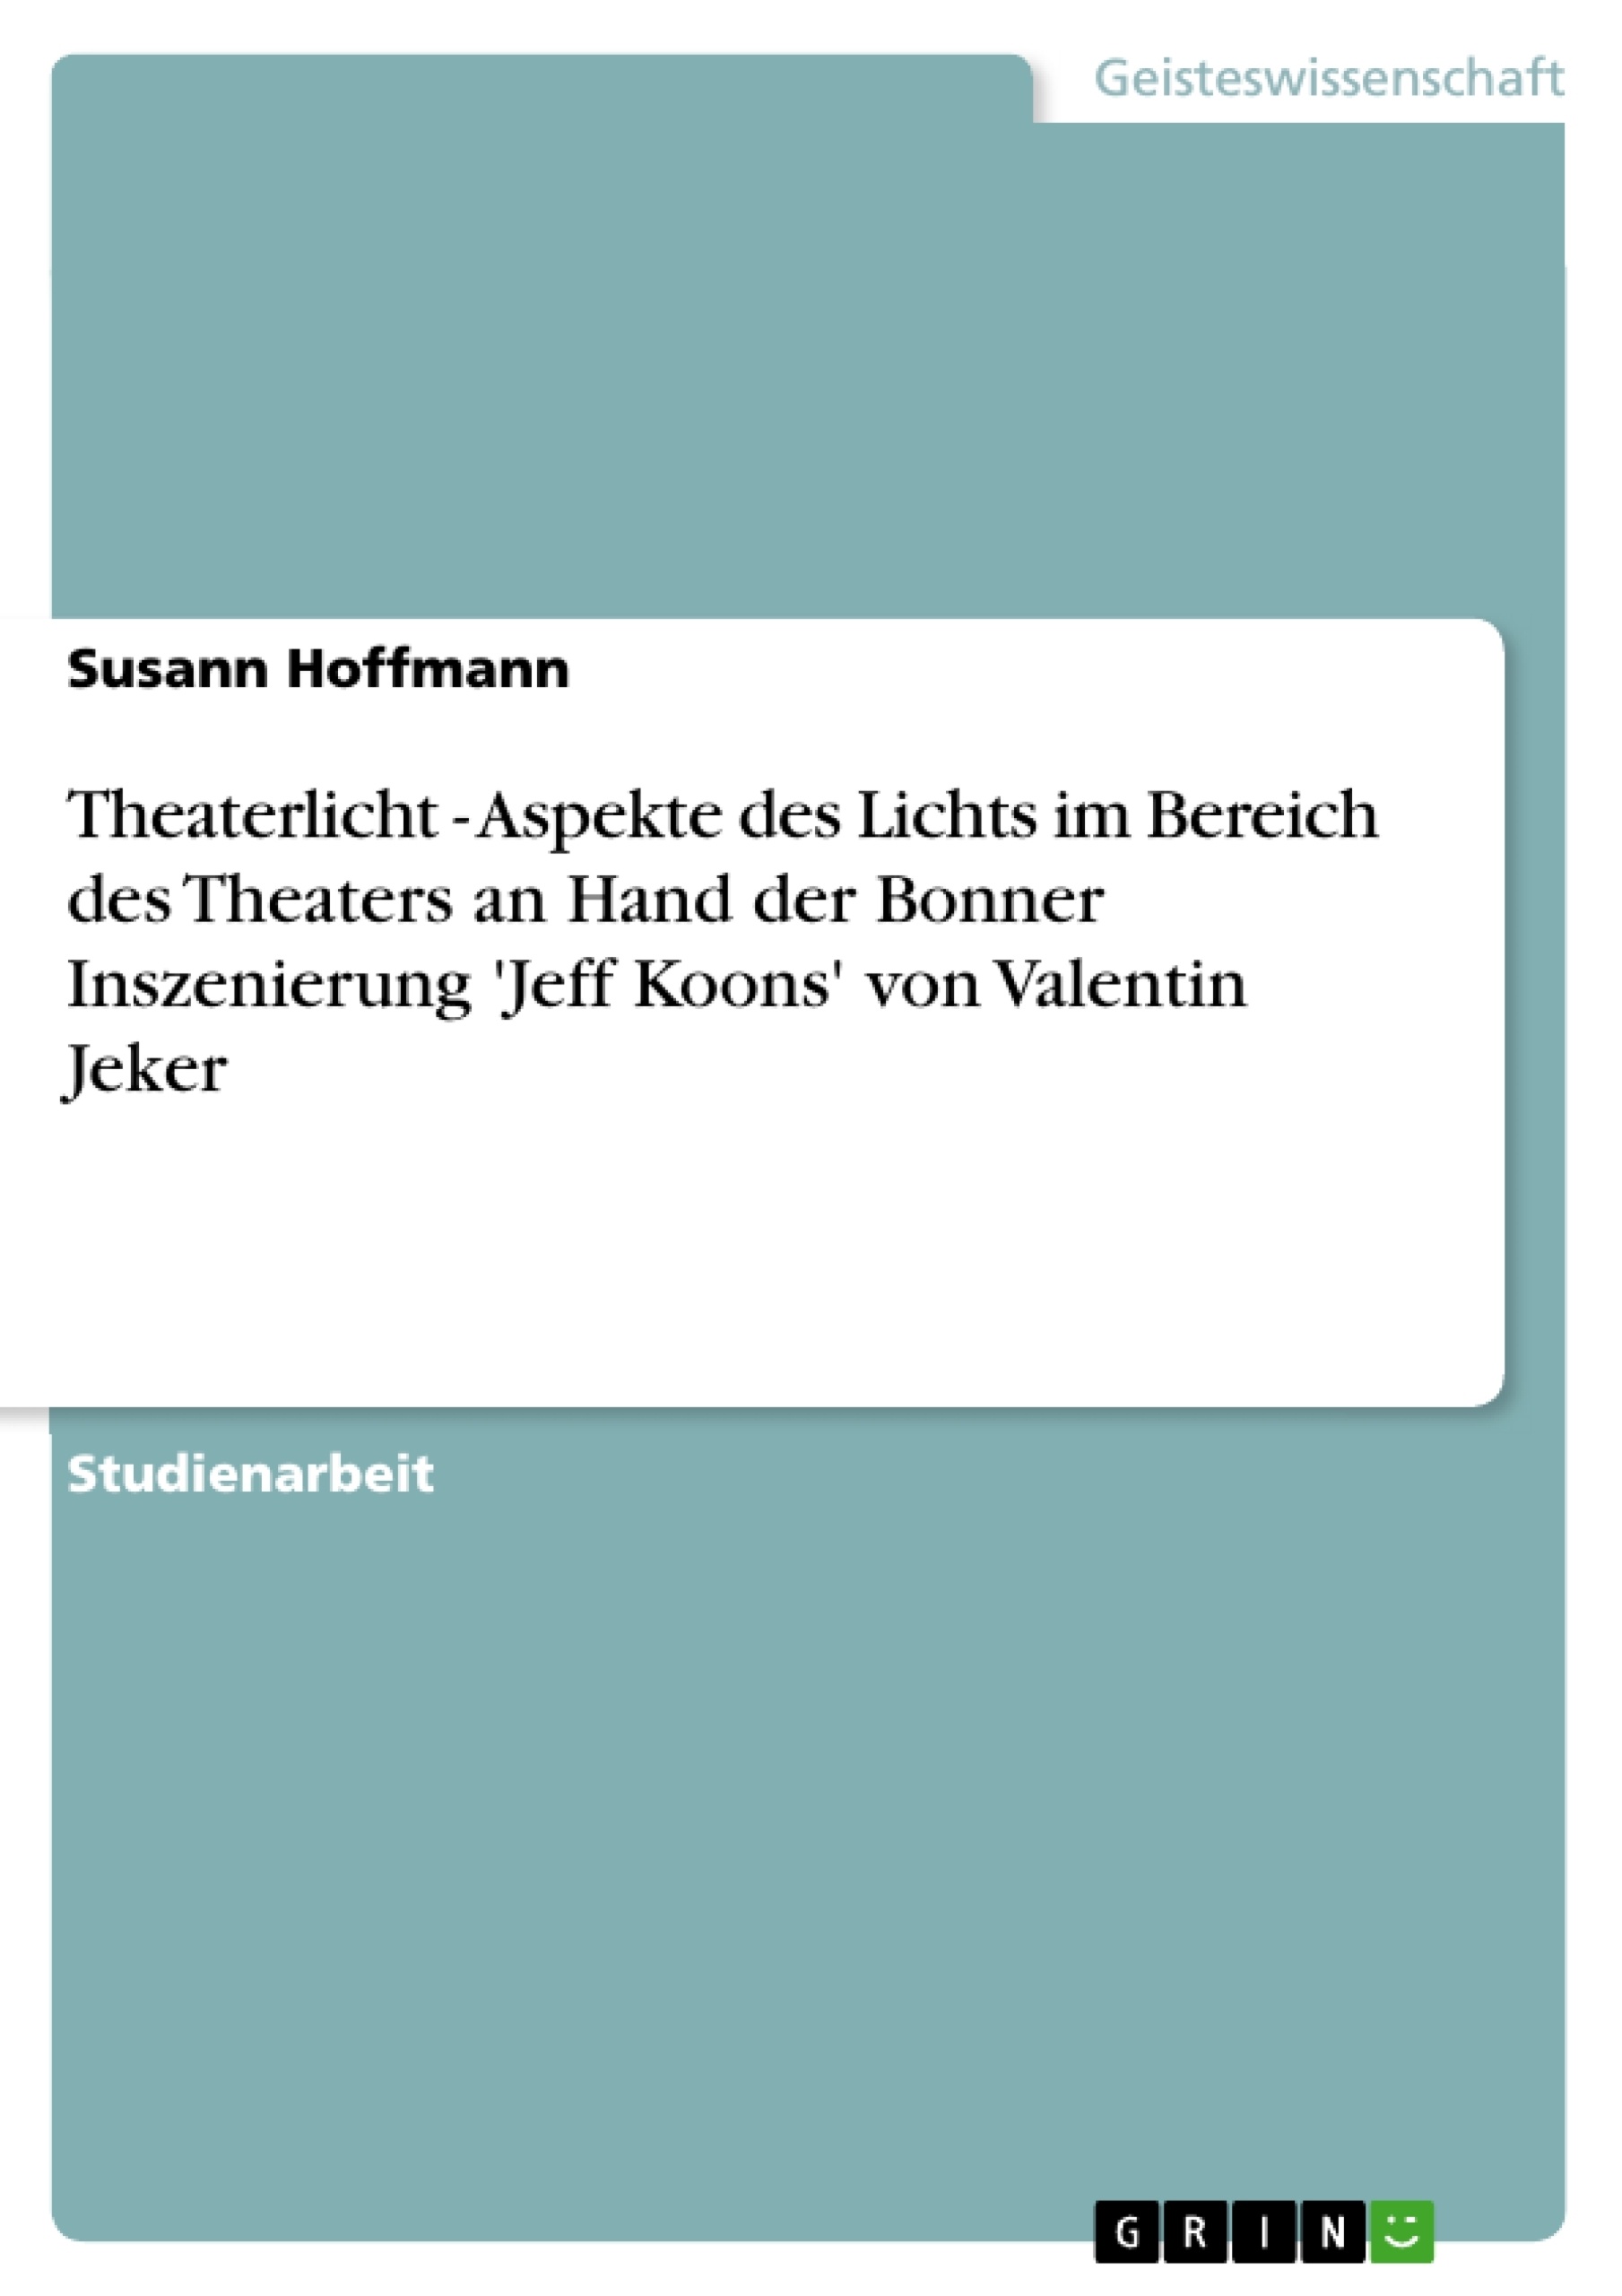 Título: Theaterlicht - Aspekte des Lichts im Bereich des Theaters an Hand der Bonner Inszenierung 'Jeff Koons' von Valentin Jeker